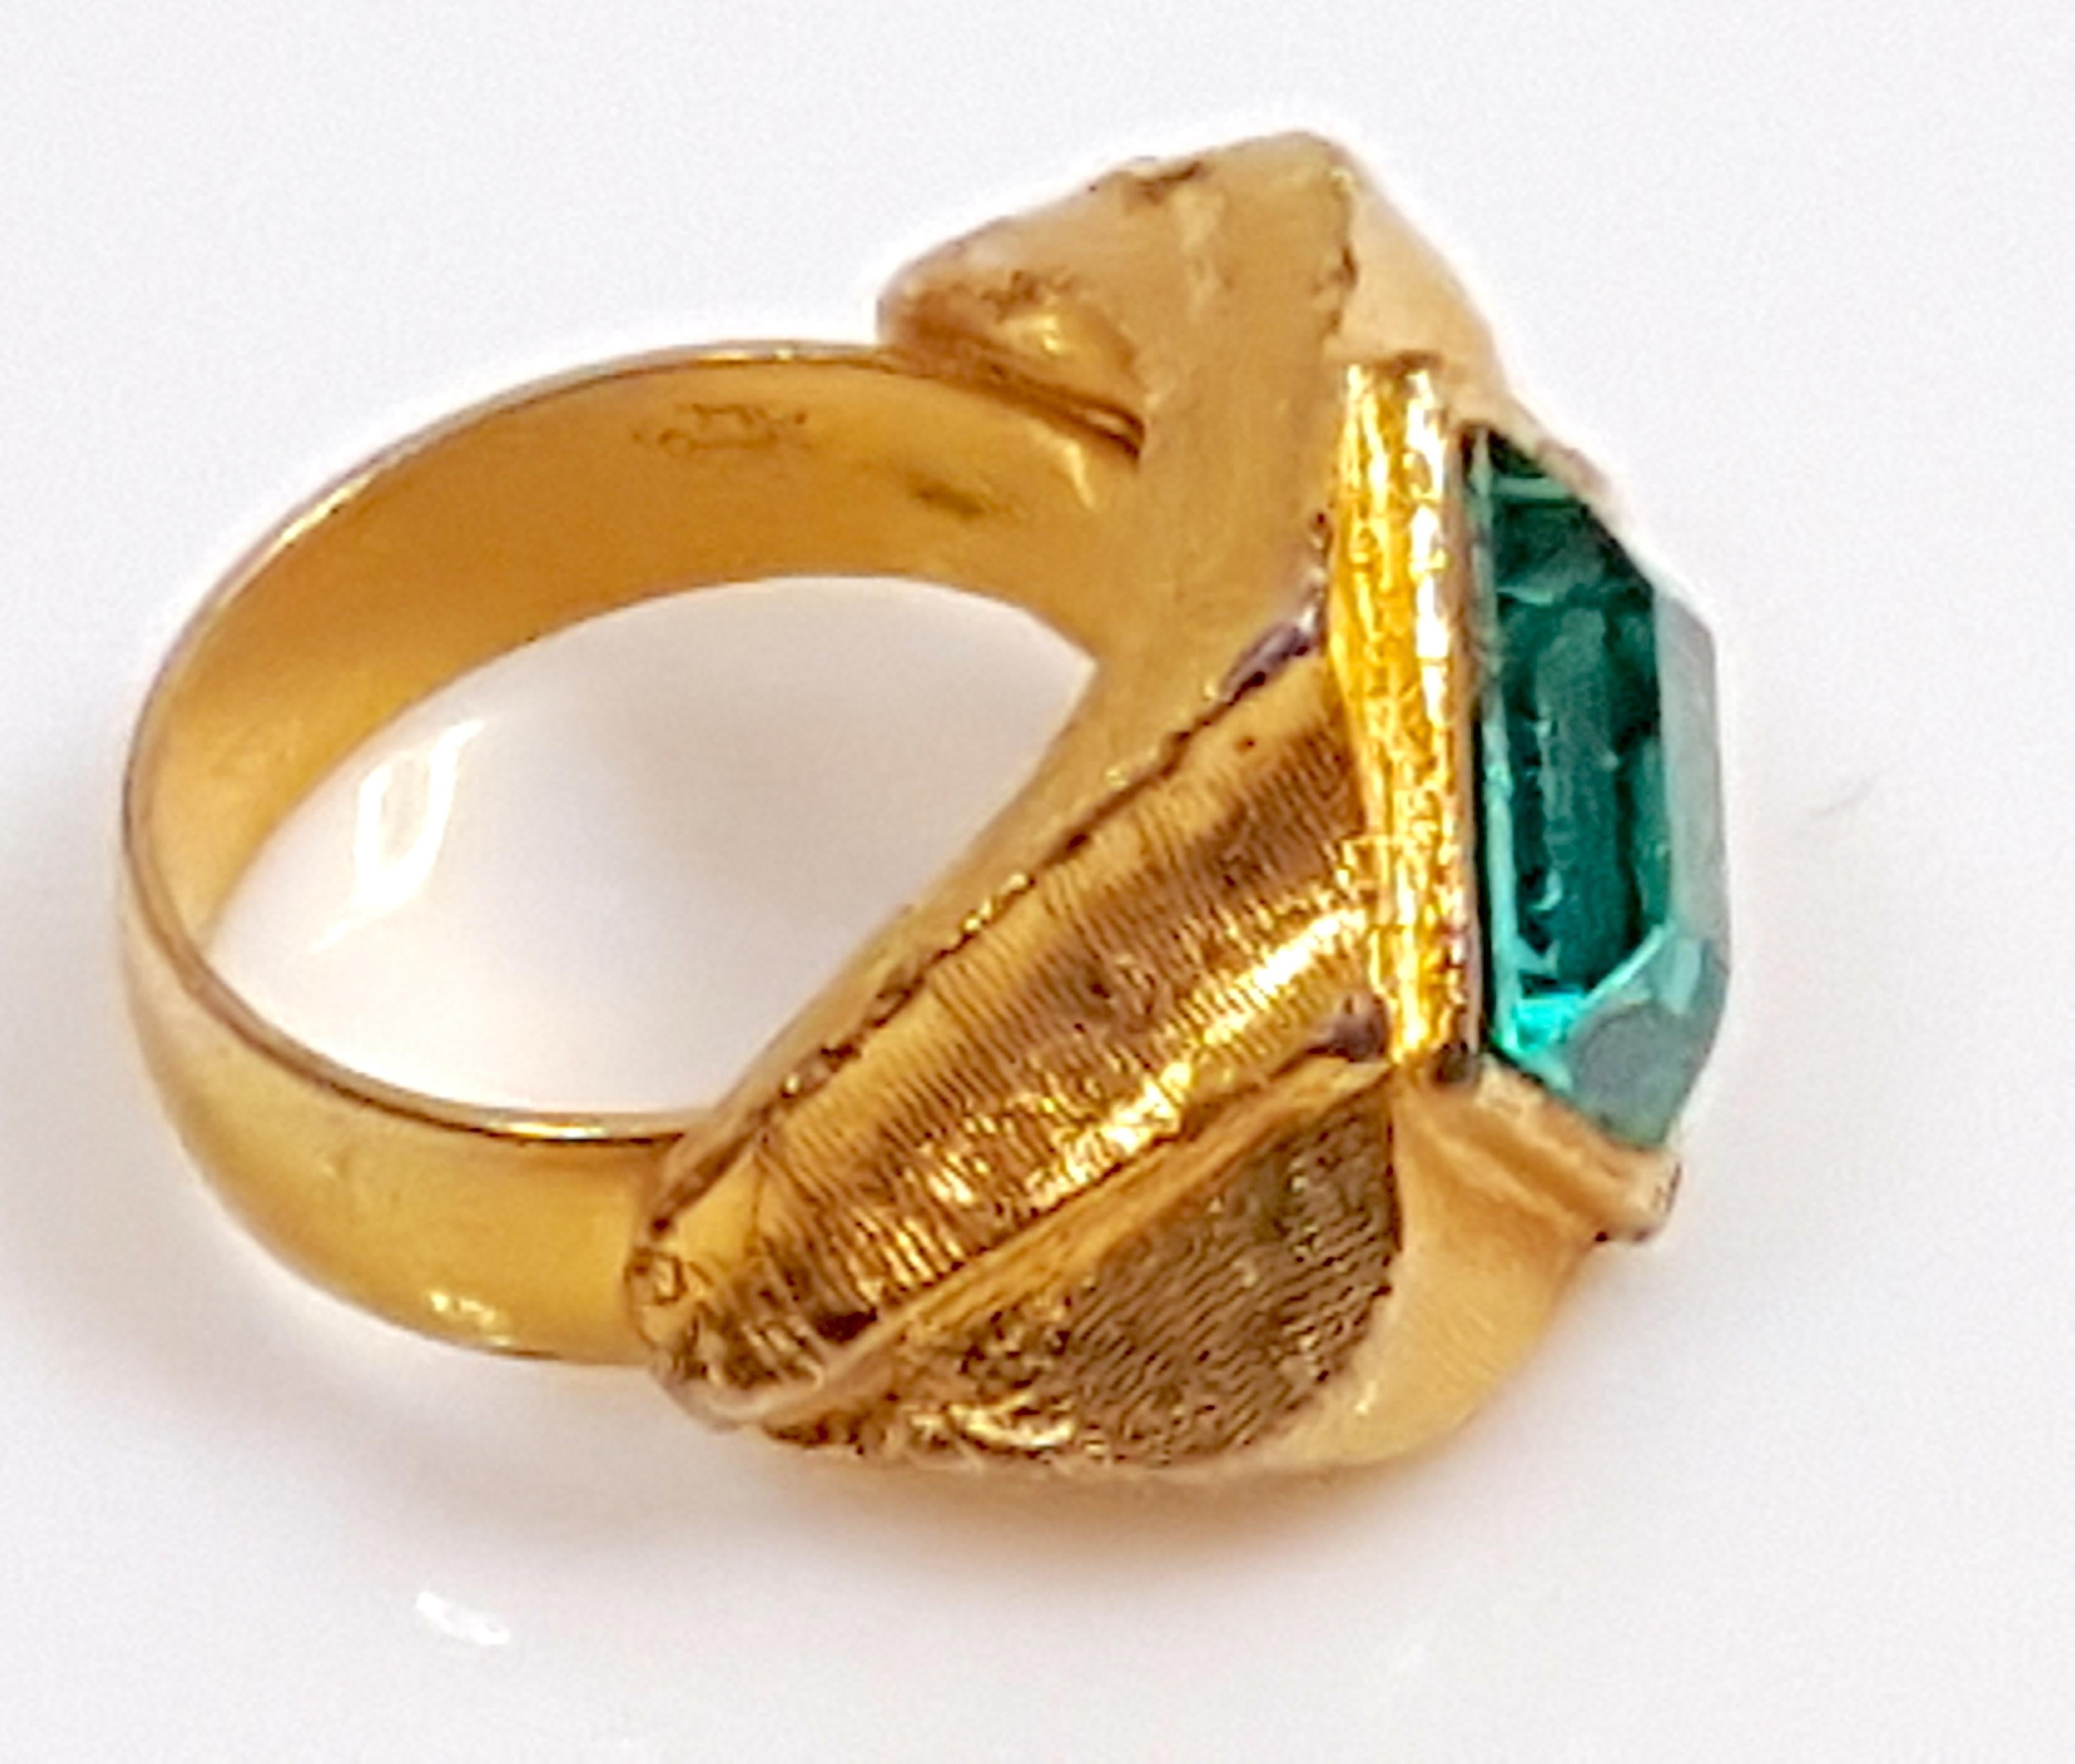 Modernist Couture DiorDesigner WesternGermany MaxMuller TealCrystal GoldGilt Textural Ring For Sale